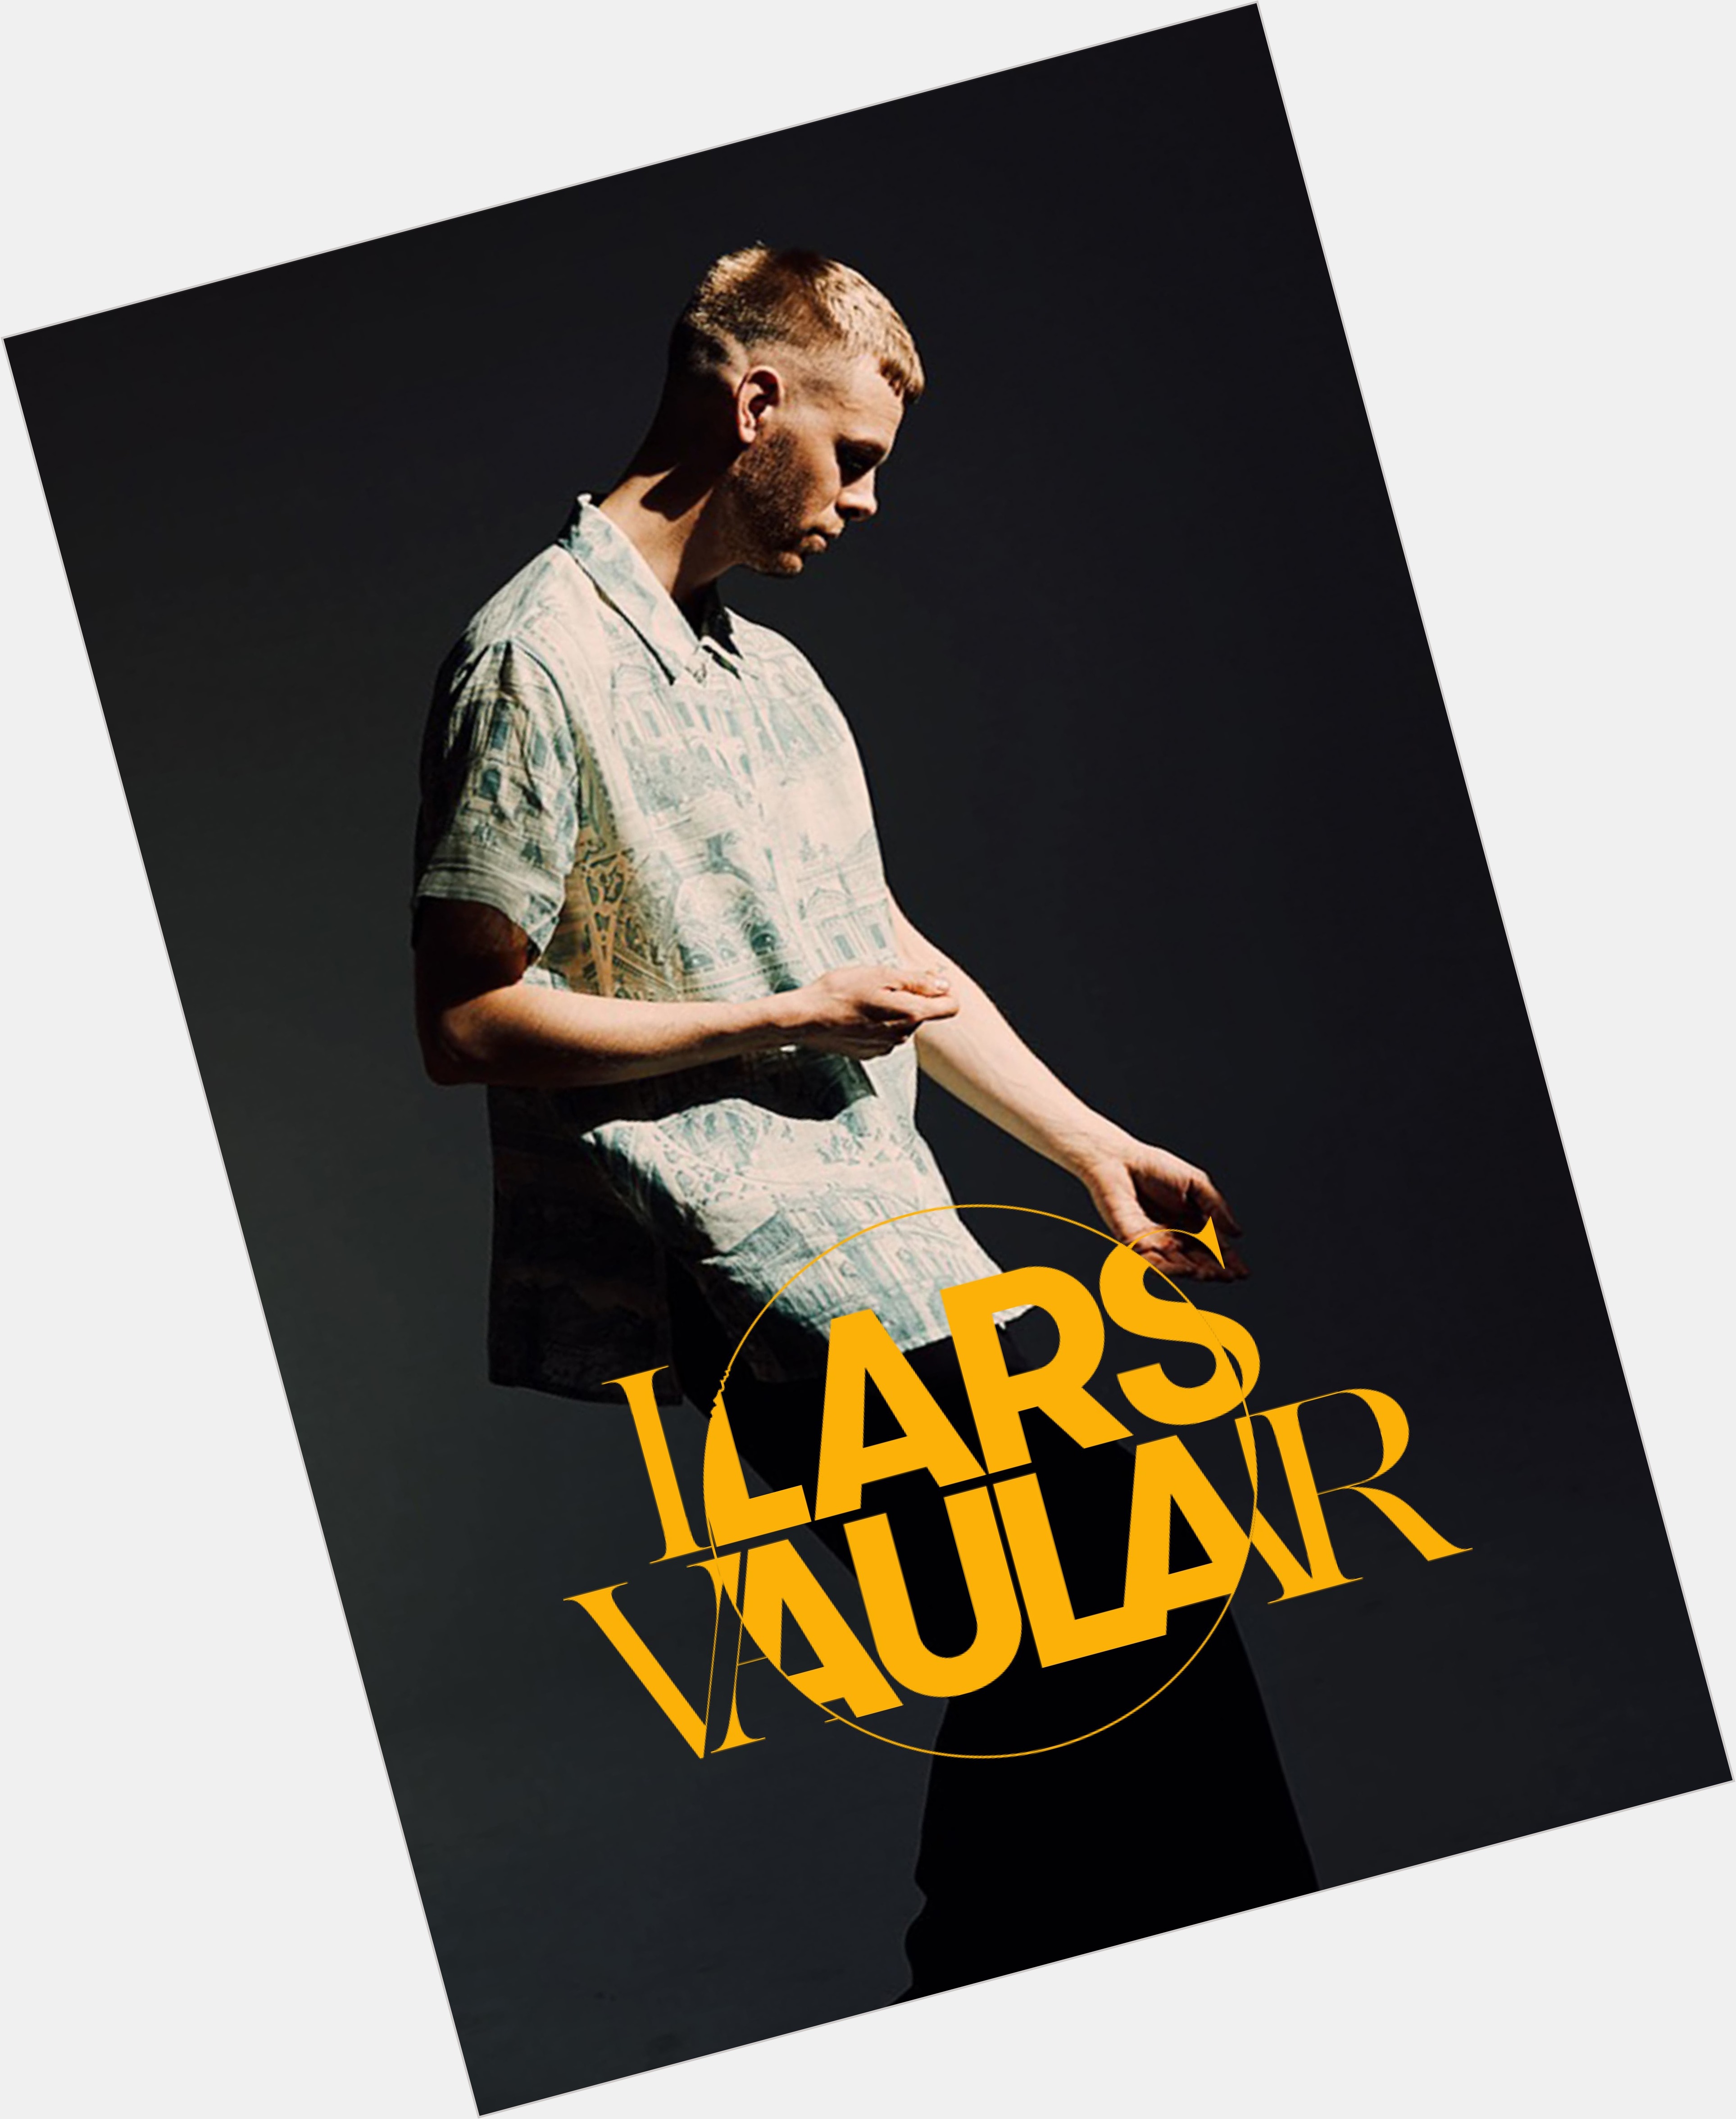 Lars Vaular dating 3